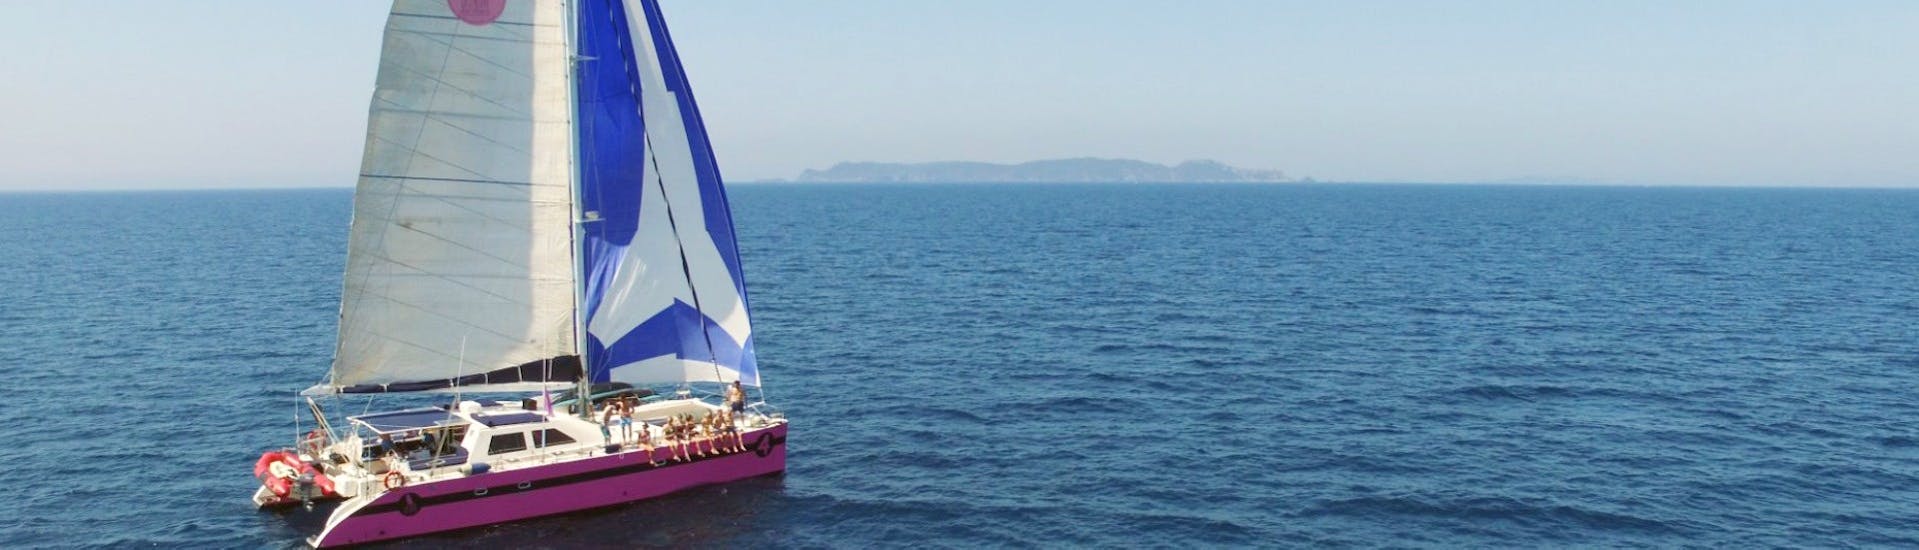 Uitzicht tijdens de Catamarantocht naar de stranden van Salins en de baai van Canoubiers met Caseneuve Maxi Catamaran.